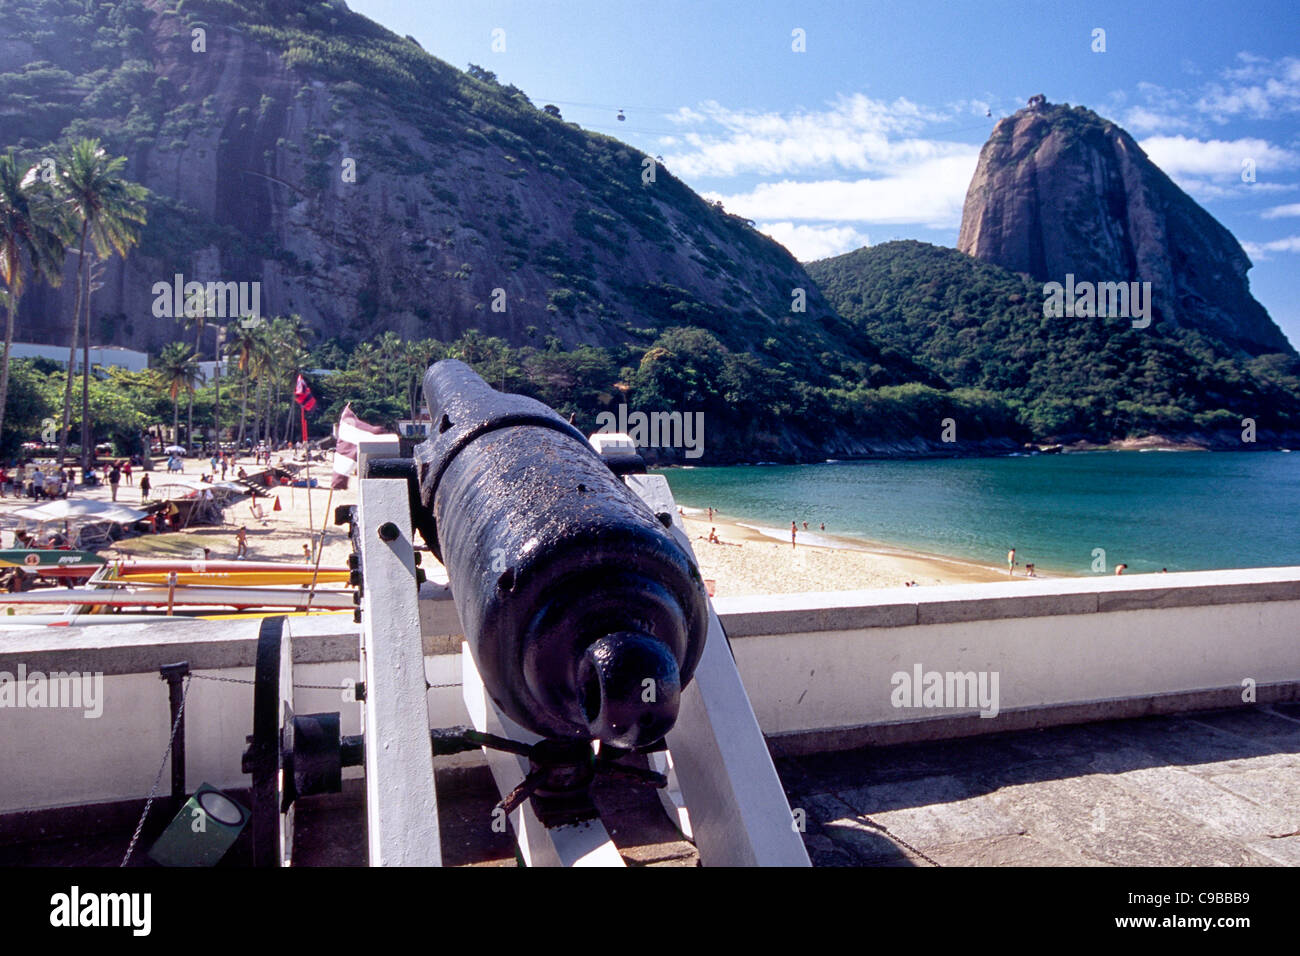 Canon Overlooking Vermelha Beach with Sugarloaf Mountain, Rio de Janeiro, Brazil Stock Photo